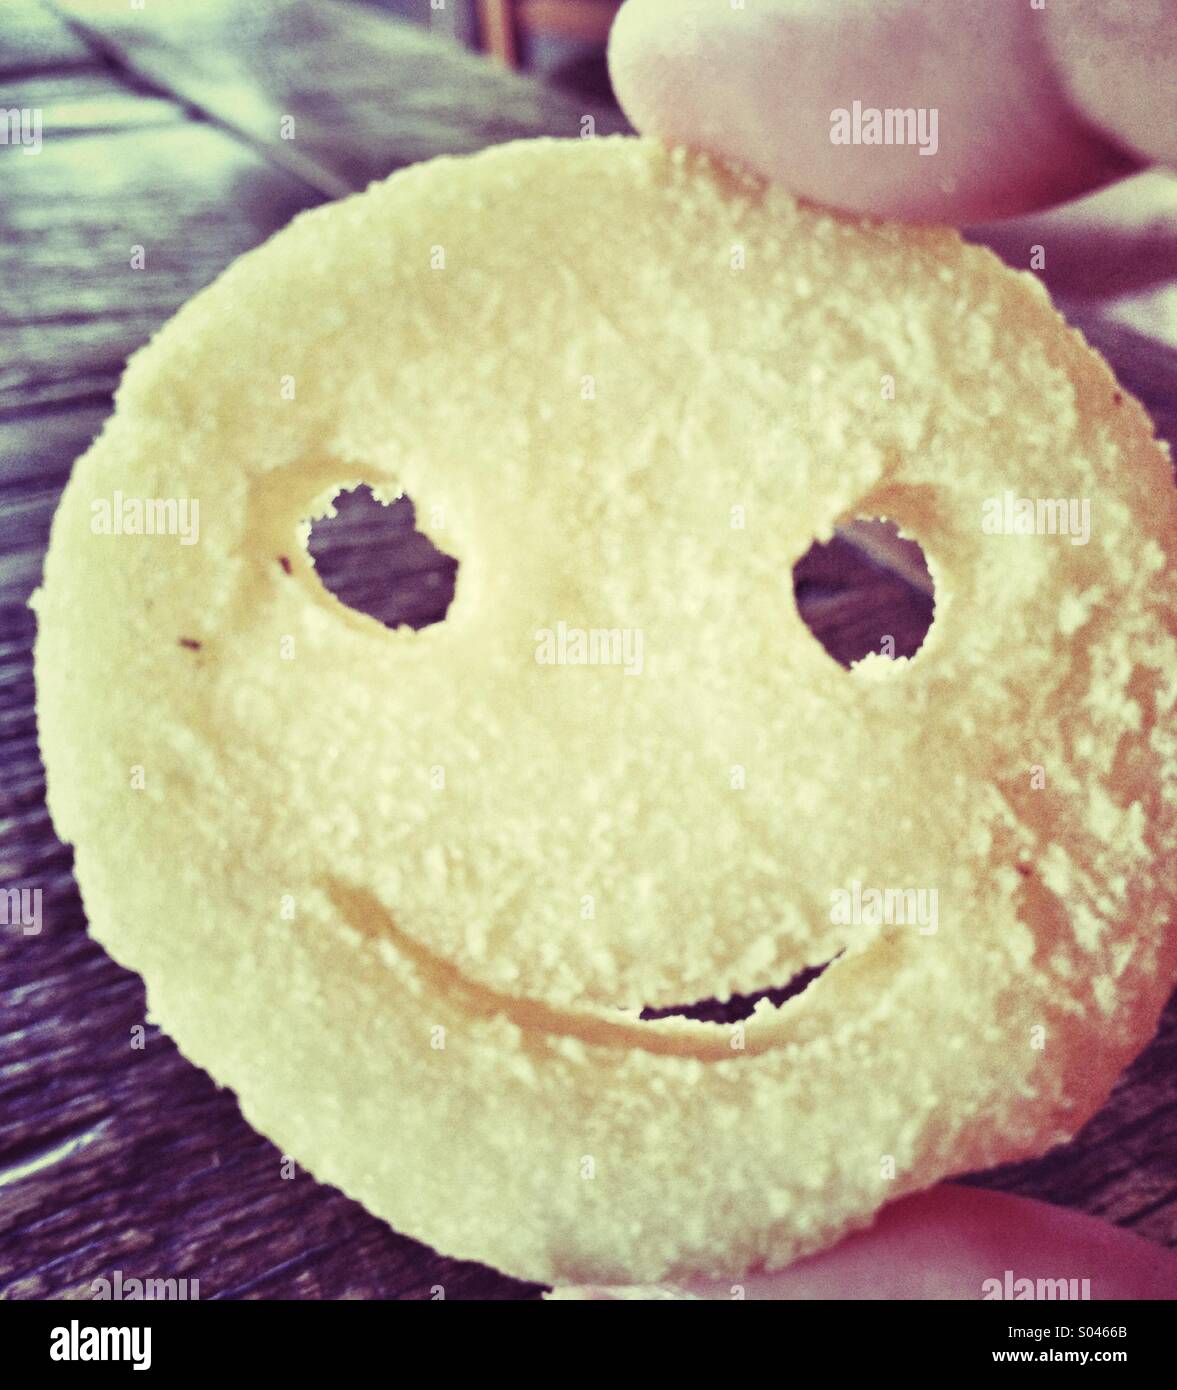 Smiling potato Stock Photo